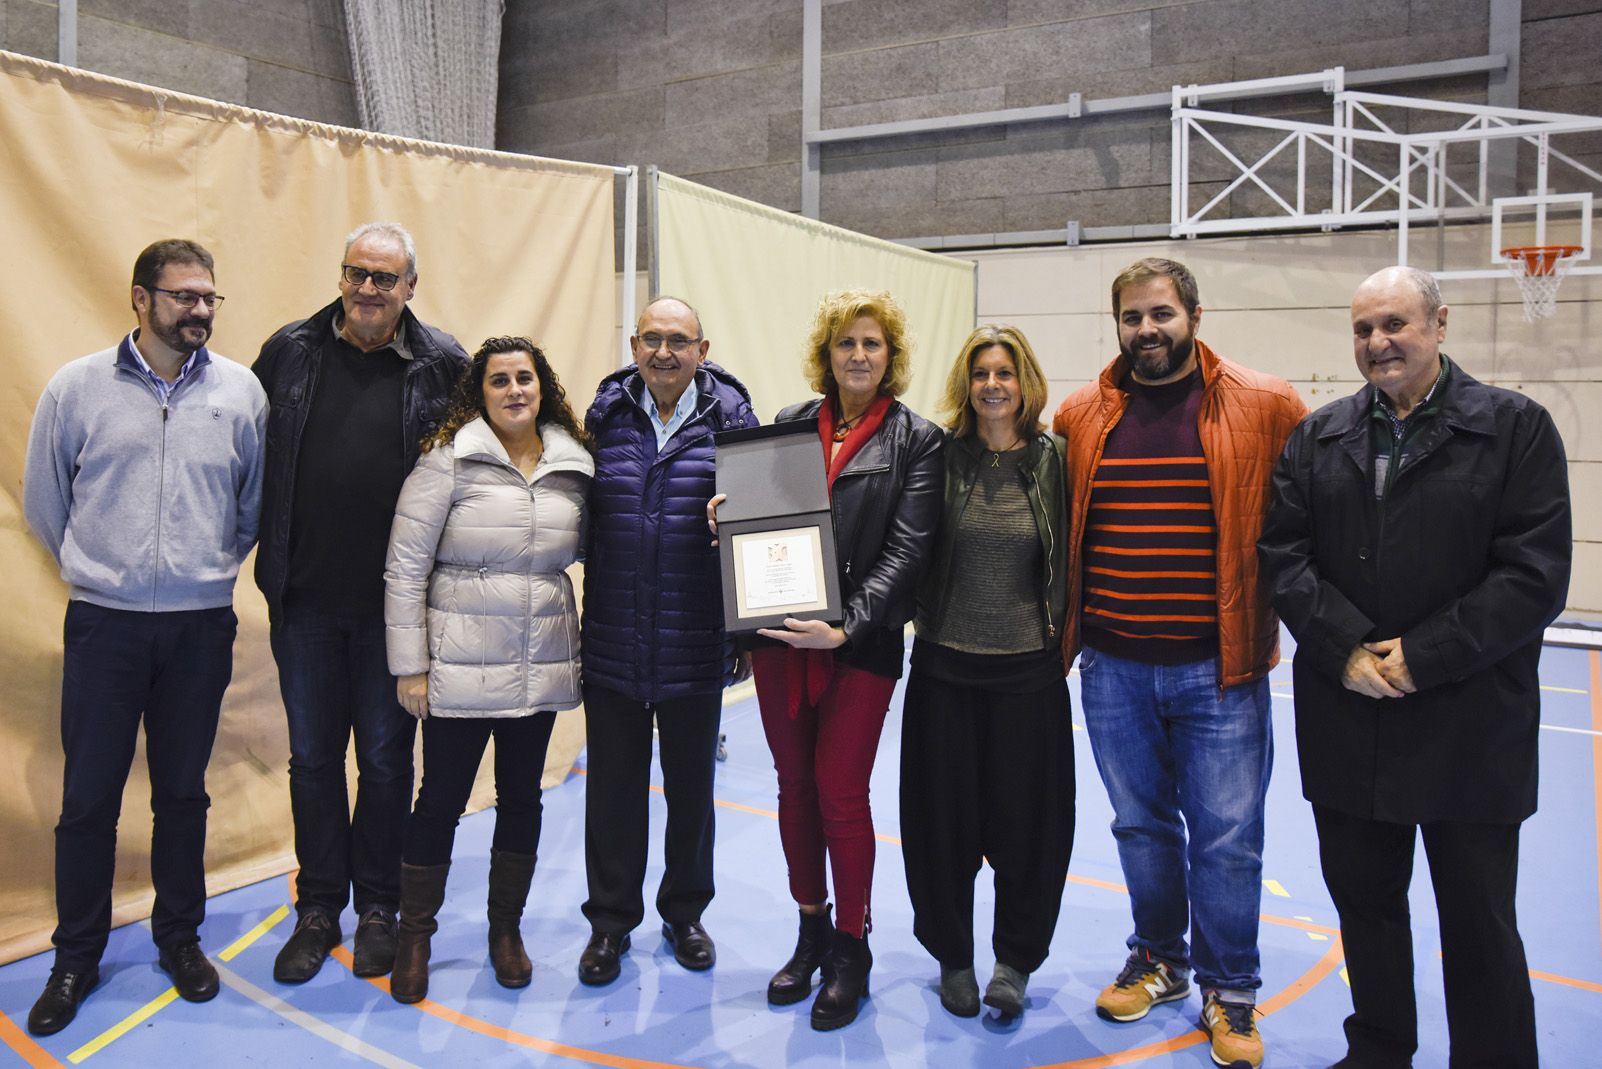 Presentació dels equips del Club Voleibol Sant Cugat. Foto: Bernat Millet.